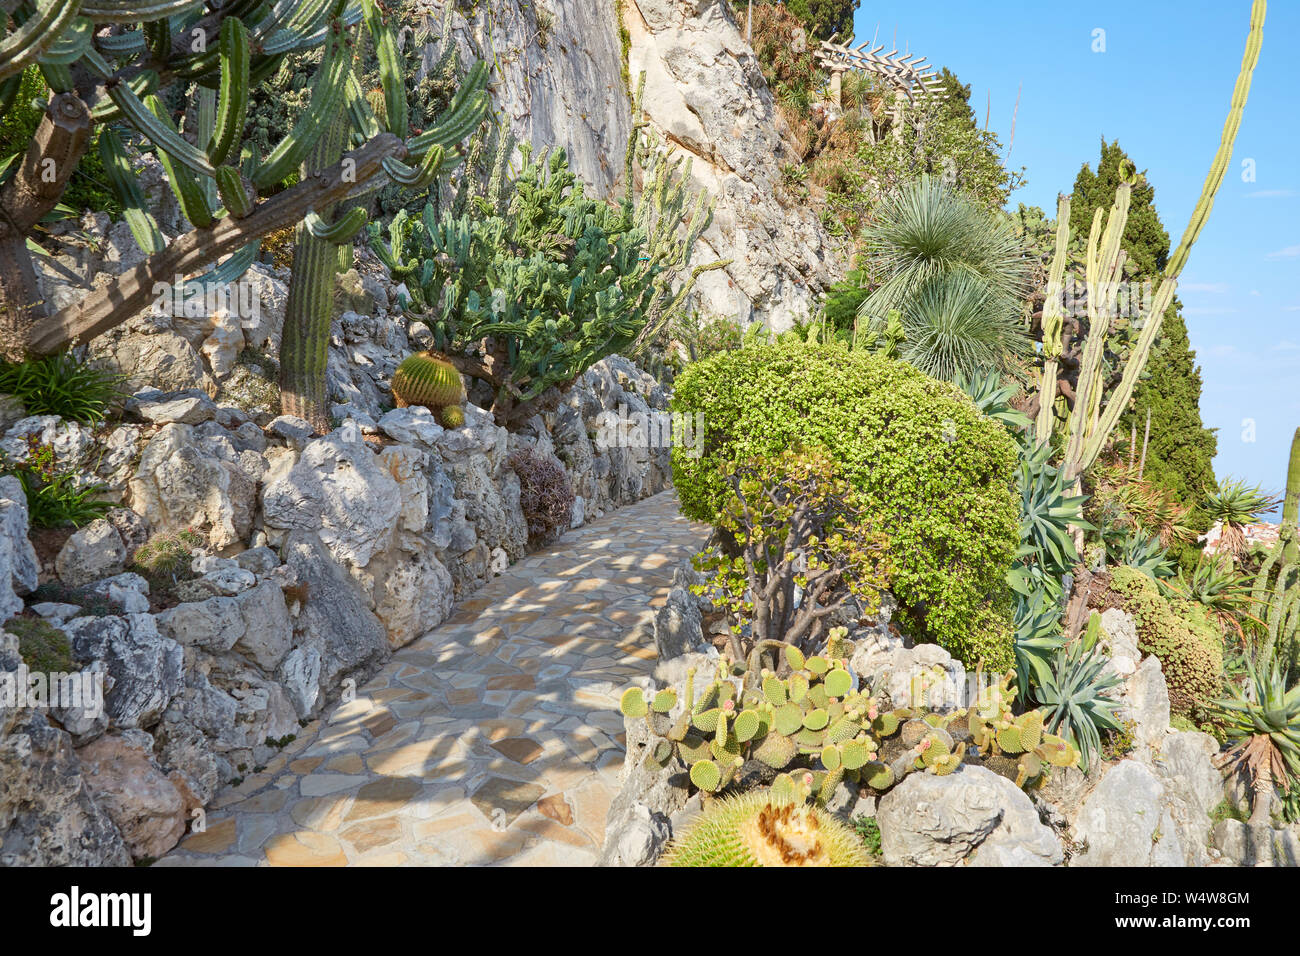 MONTE CARLO, MONACO - le 20 août 2016 : Le chemin de jardin exotique et falaise avec de rares plantes succulentes dans un jour d'été ensoleillé à Monte Carlo, Monaco. Banque D'Images